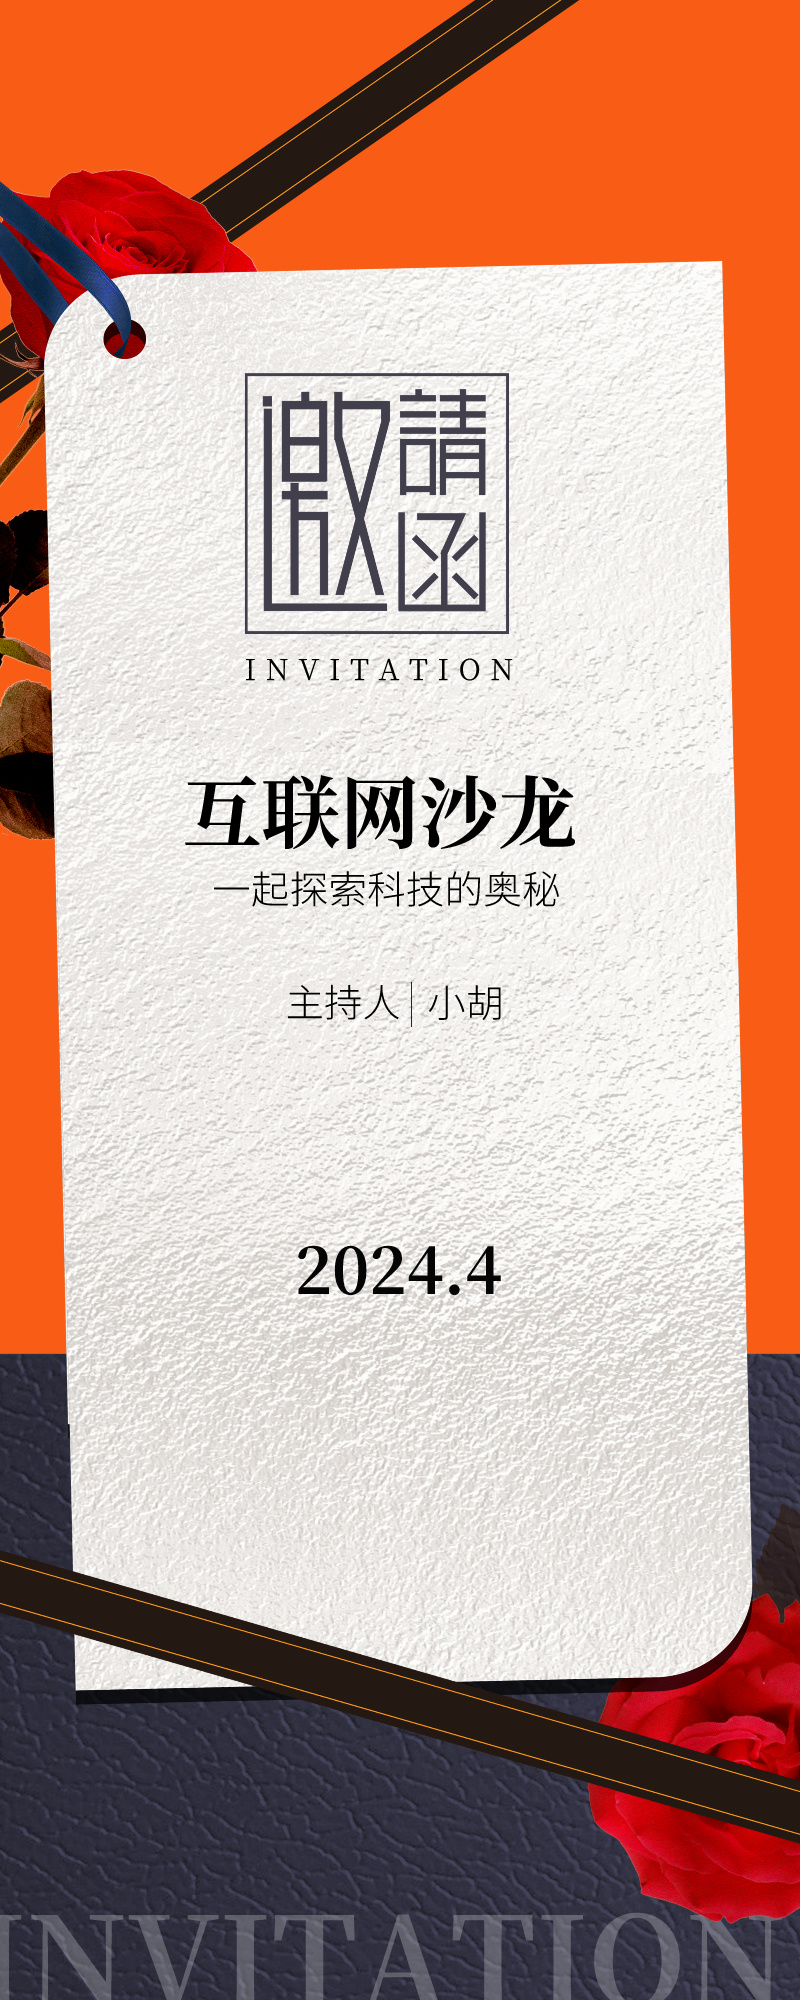 杂志风企业沙龙派对邀请函长图海报__2024-03-30+20_13_10.jpg